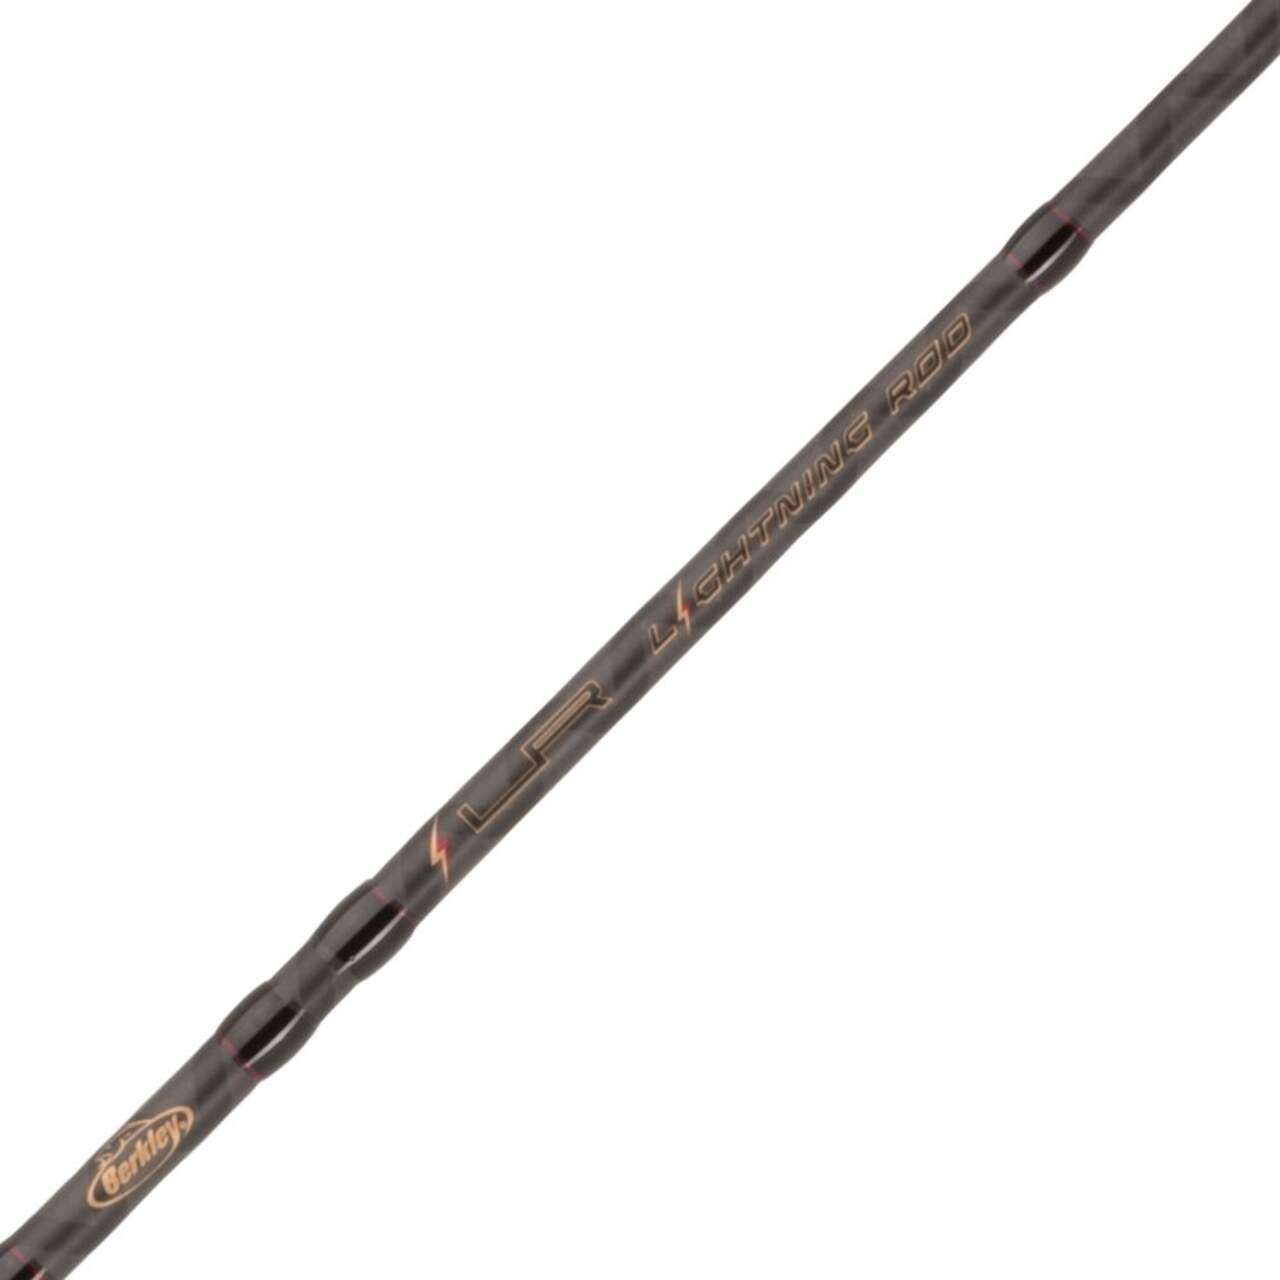 Berkley Casting & Spinning Fishing Rods, Medium-Light, 6-ft, 2-pc